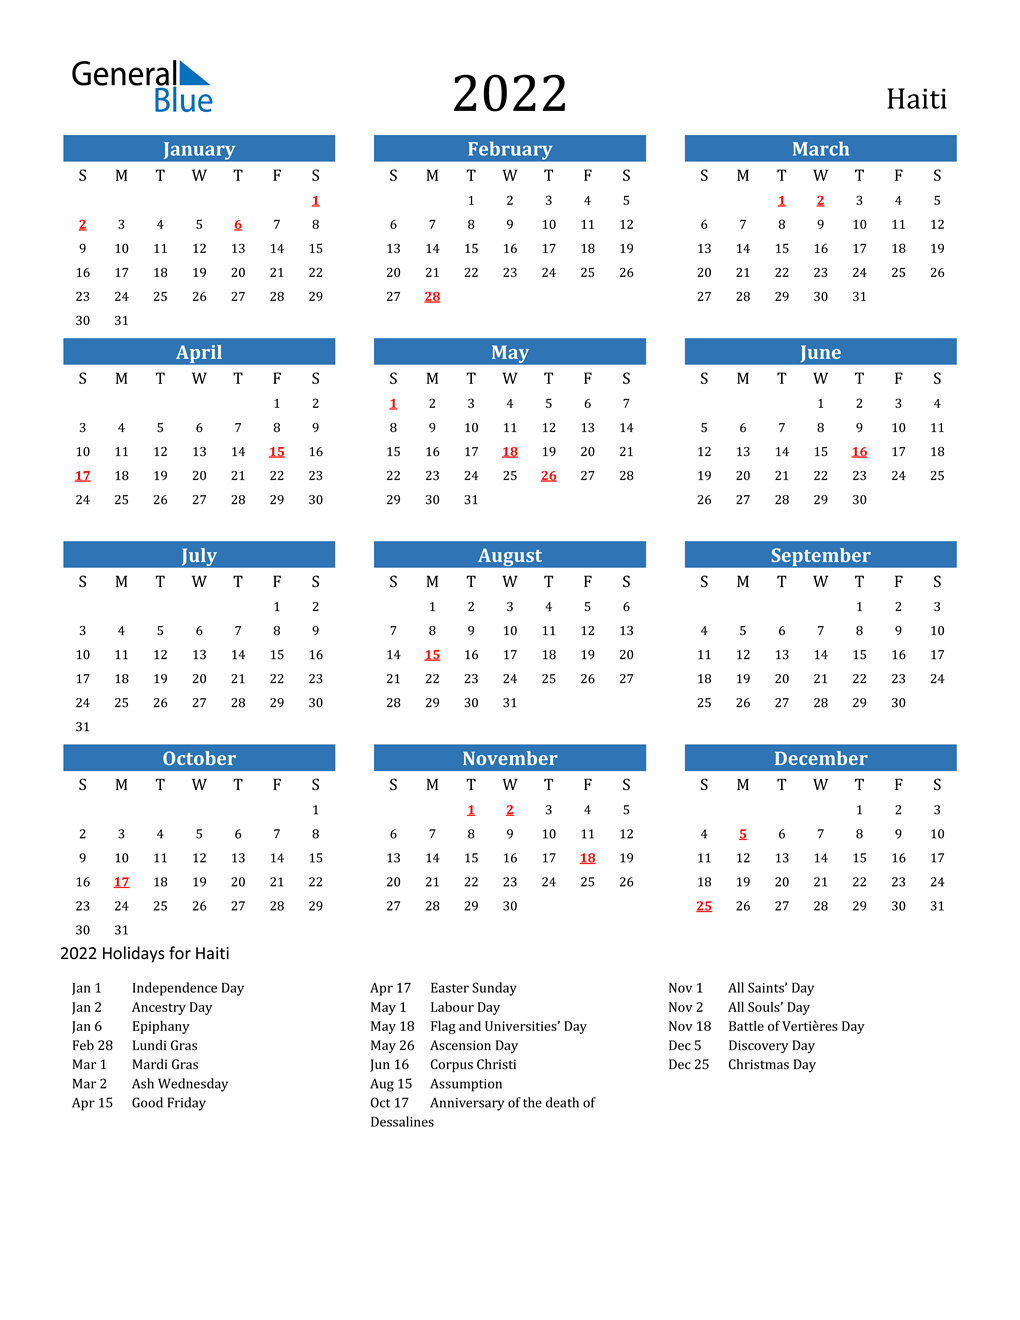 Haiti 2022 Calendar with Holidays